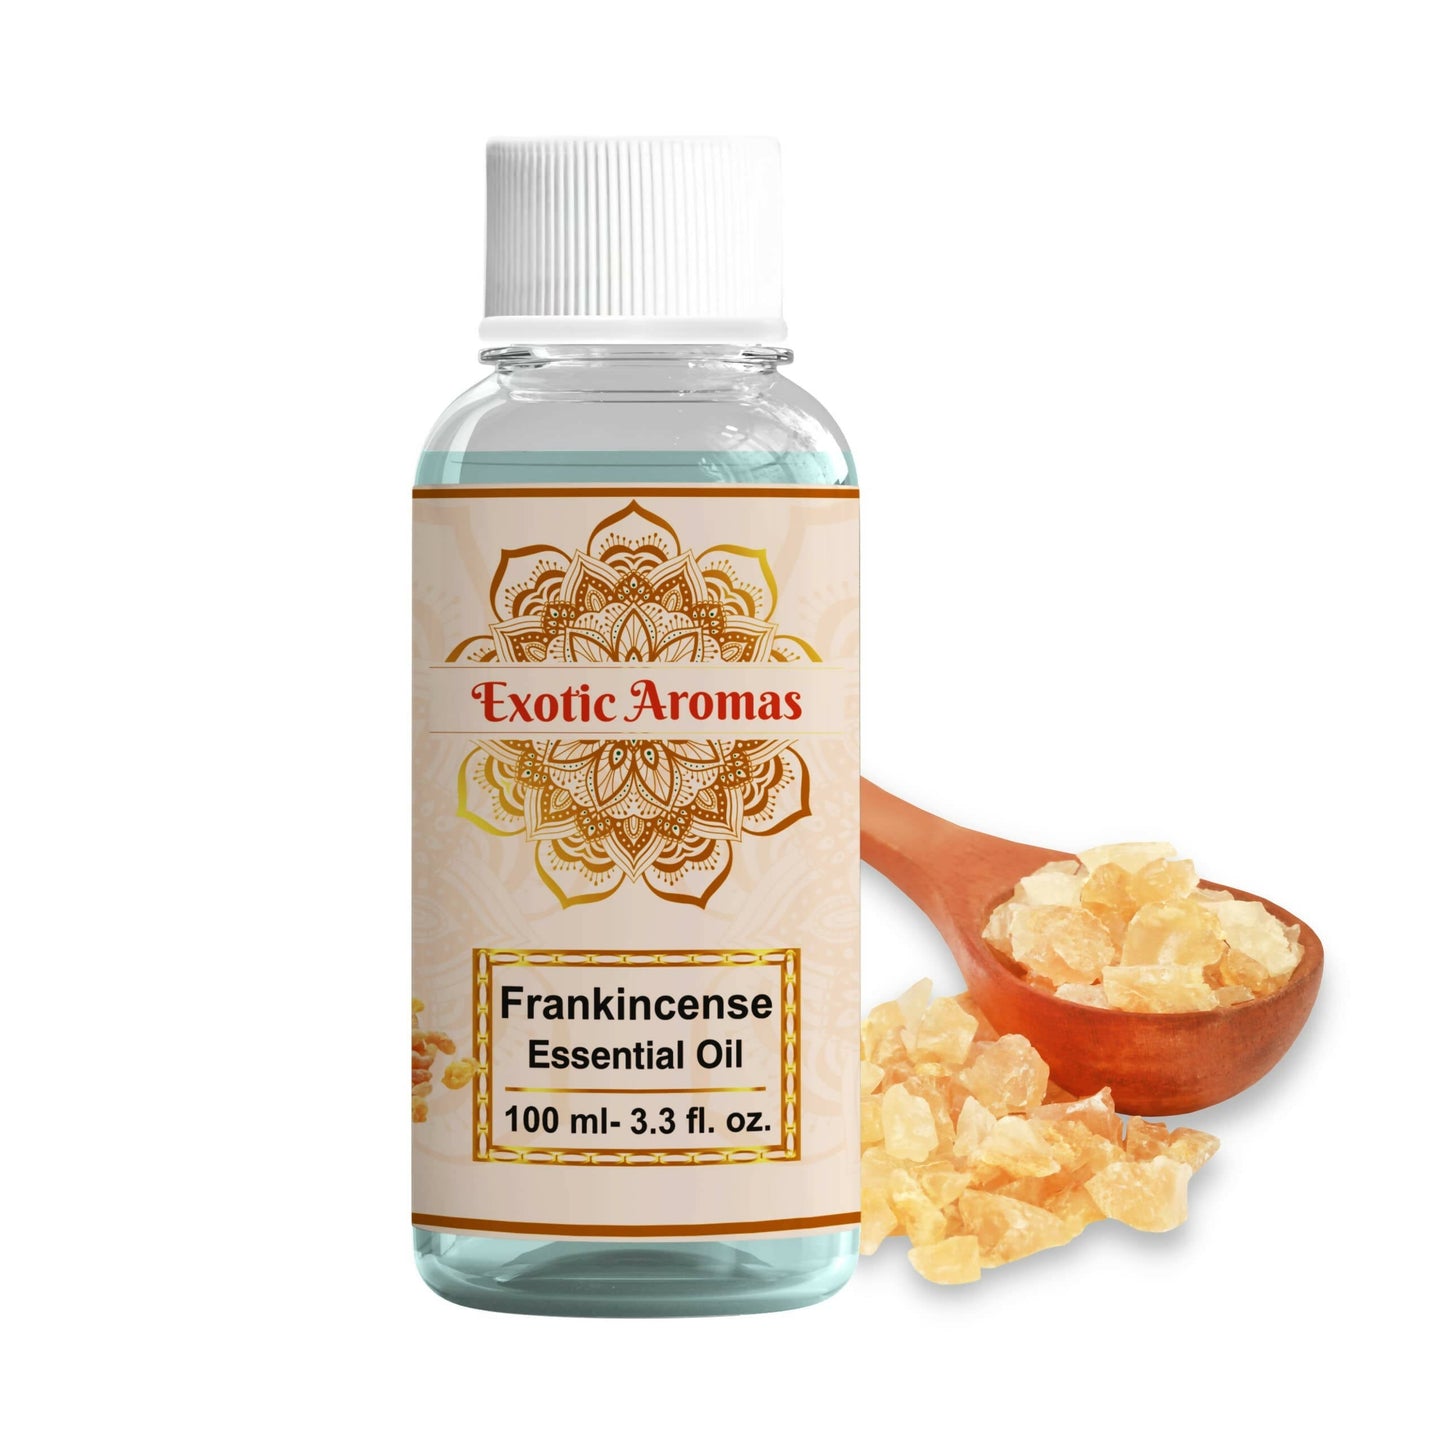 Exotic Aromas Frankincense Essential Oil